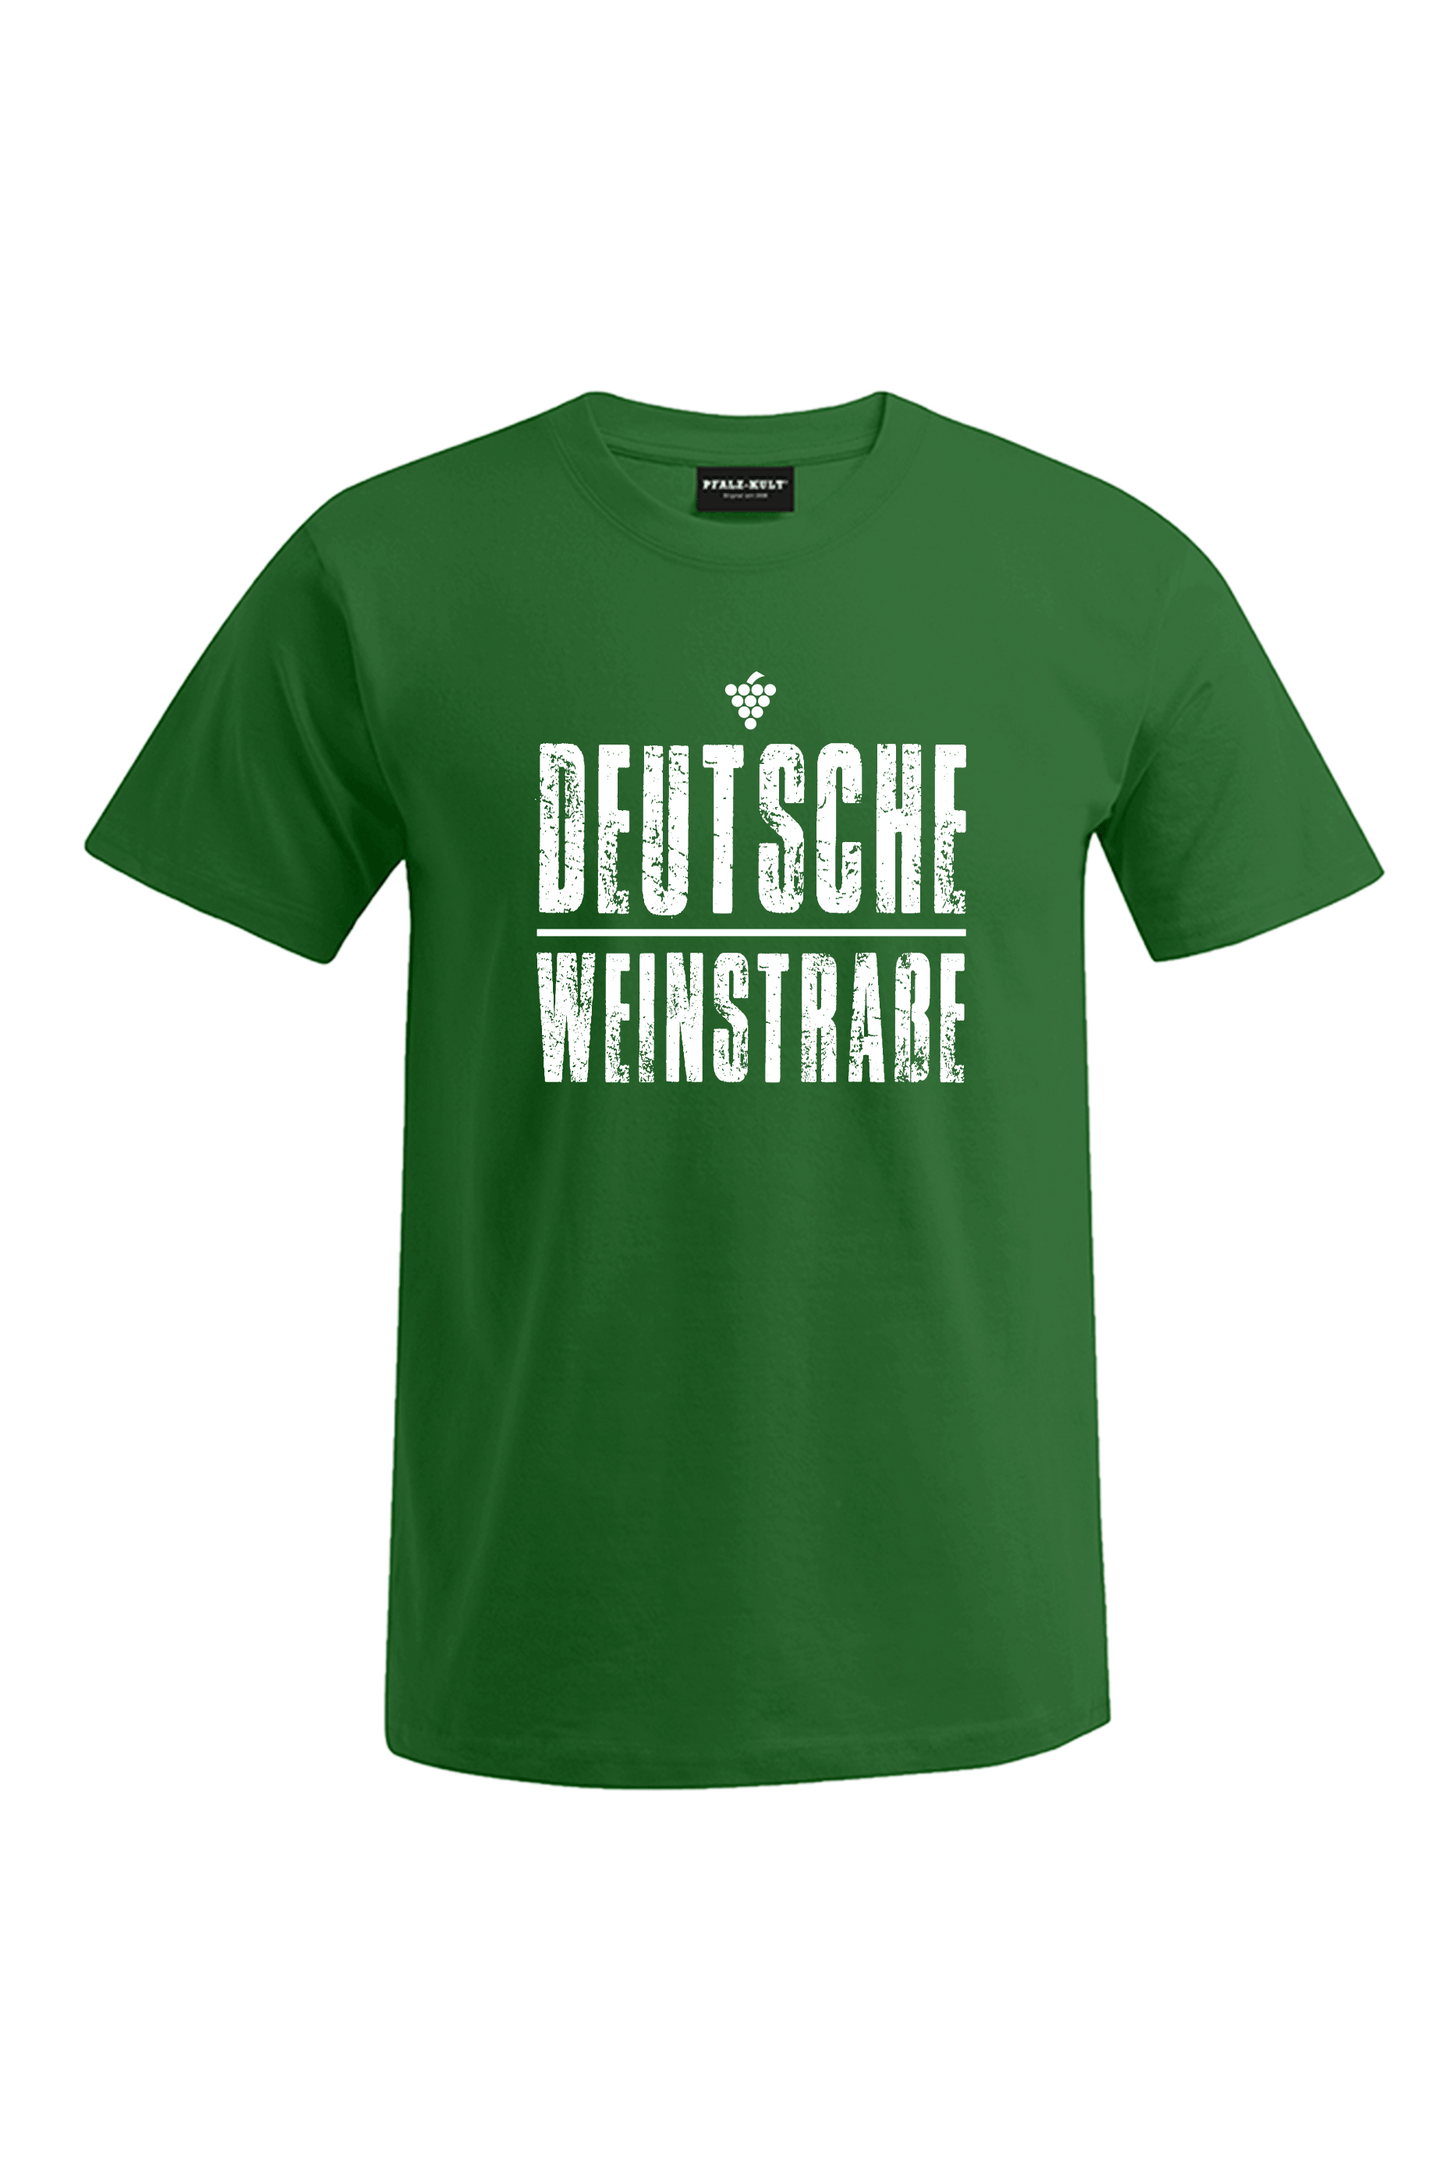 Grünes T-Shirt mit dem Aufdruck "Deutsche Weinstrasse" .  Das ideale Geschenk für jedes Pfalzkind vom Textildruck Spezialisten aus Bad Dürkheim.